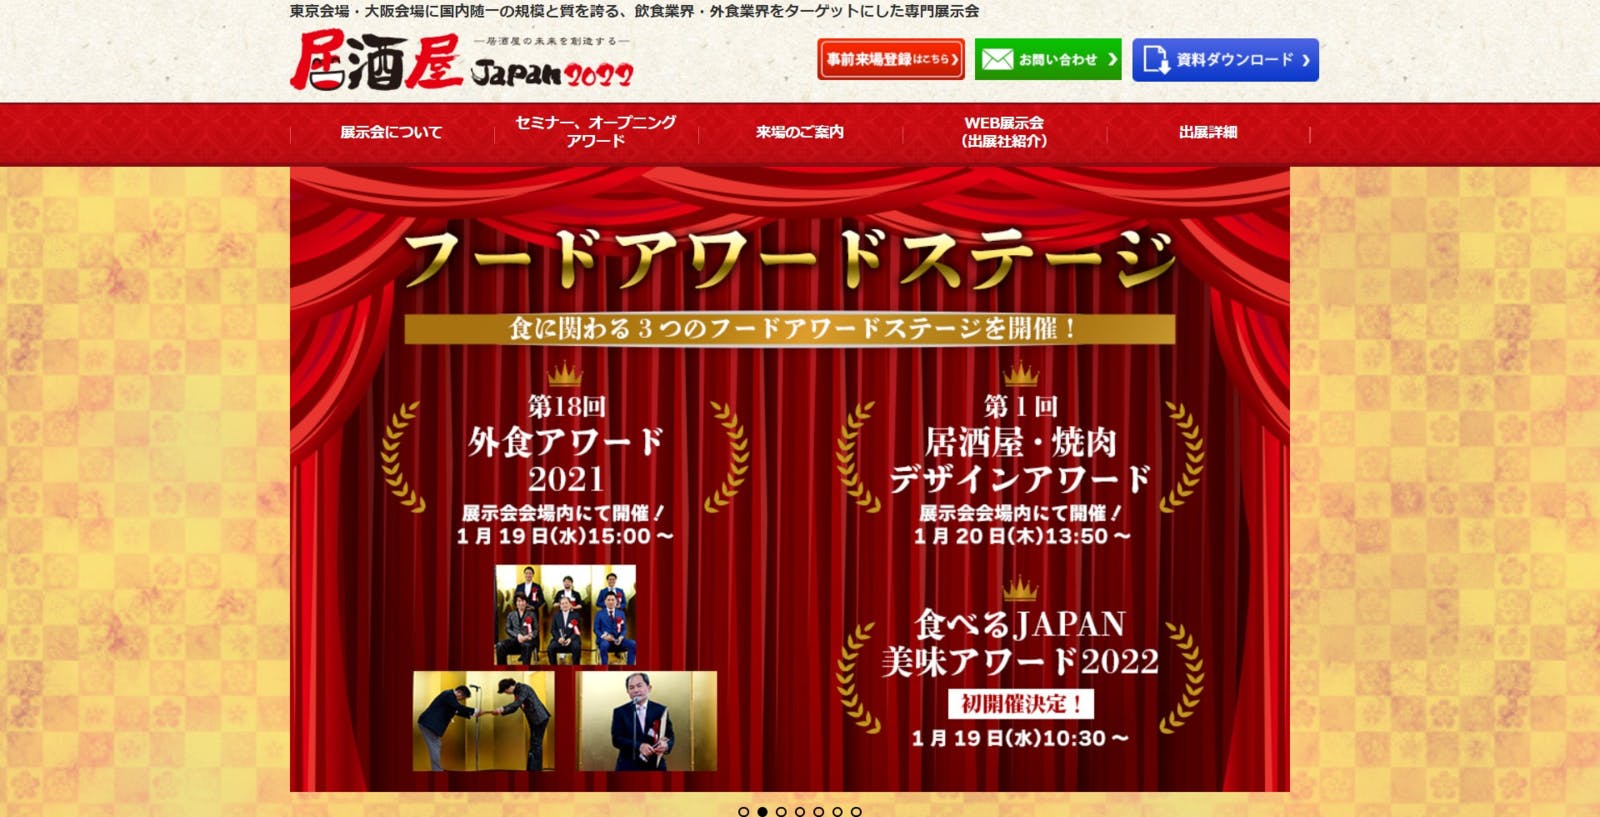 各アワードにおける授賞式の様子：居酒屋JAPAN公式サイトよりスクリーンショット